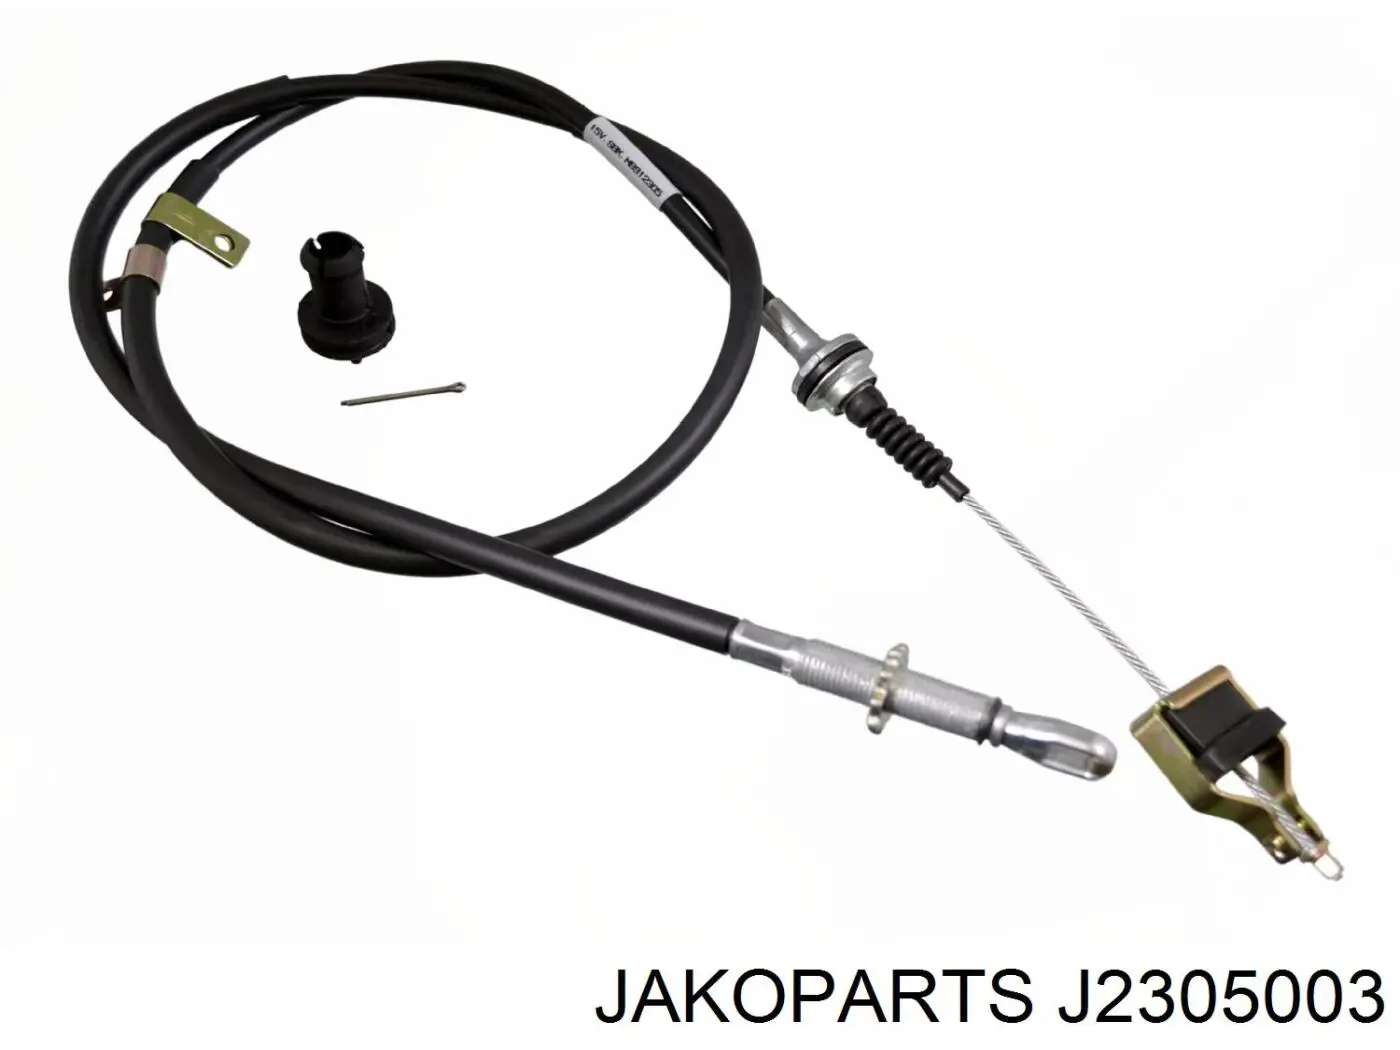 Cable de embrague J2305003 Jakoparts